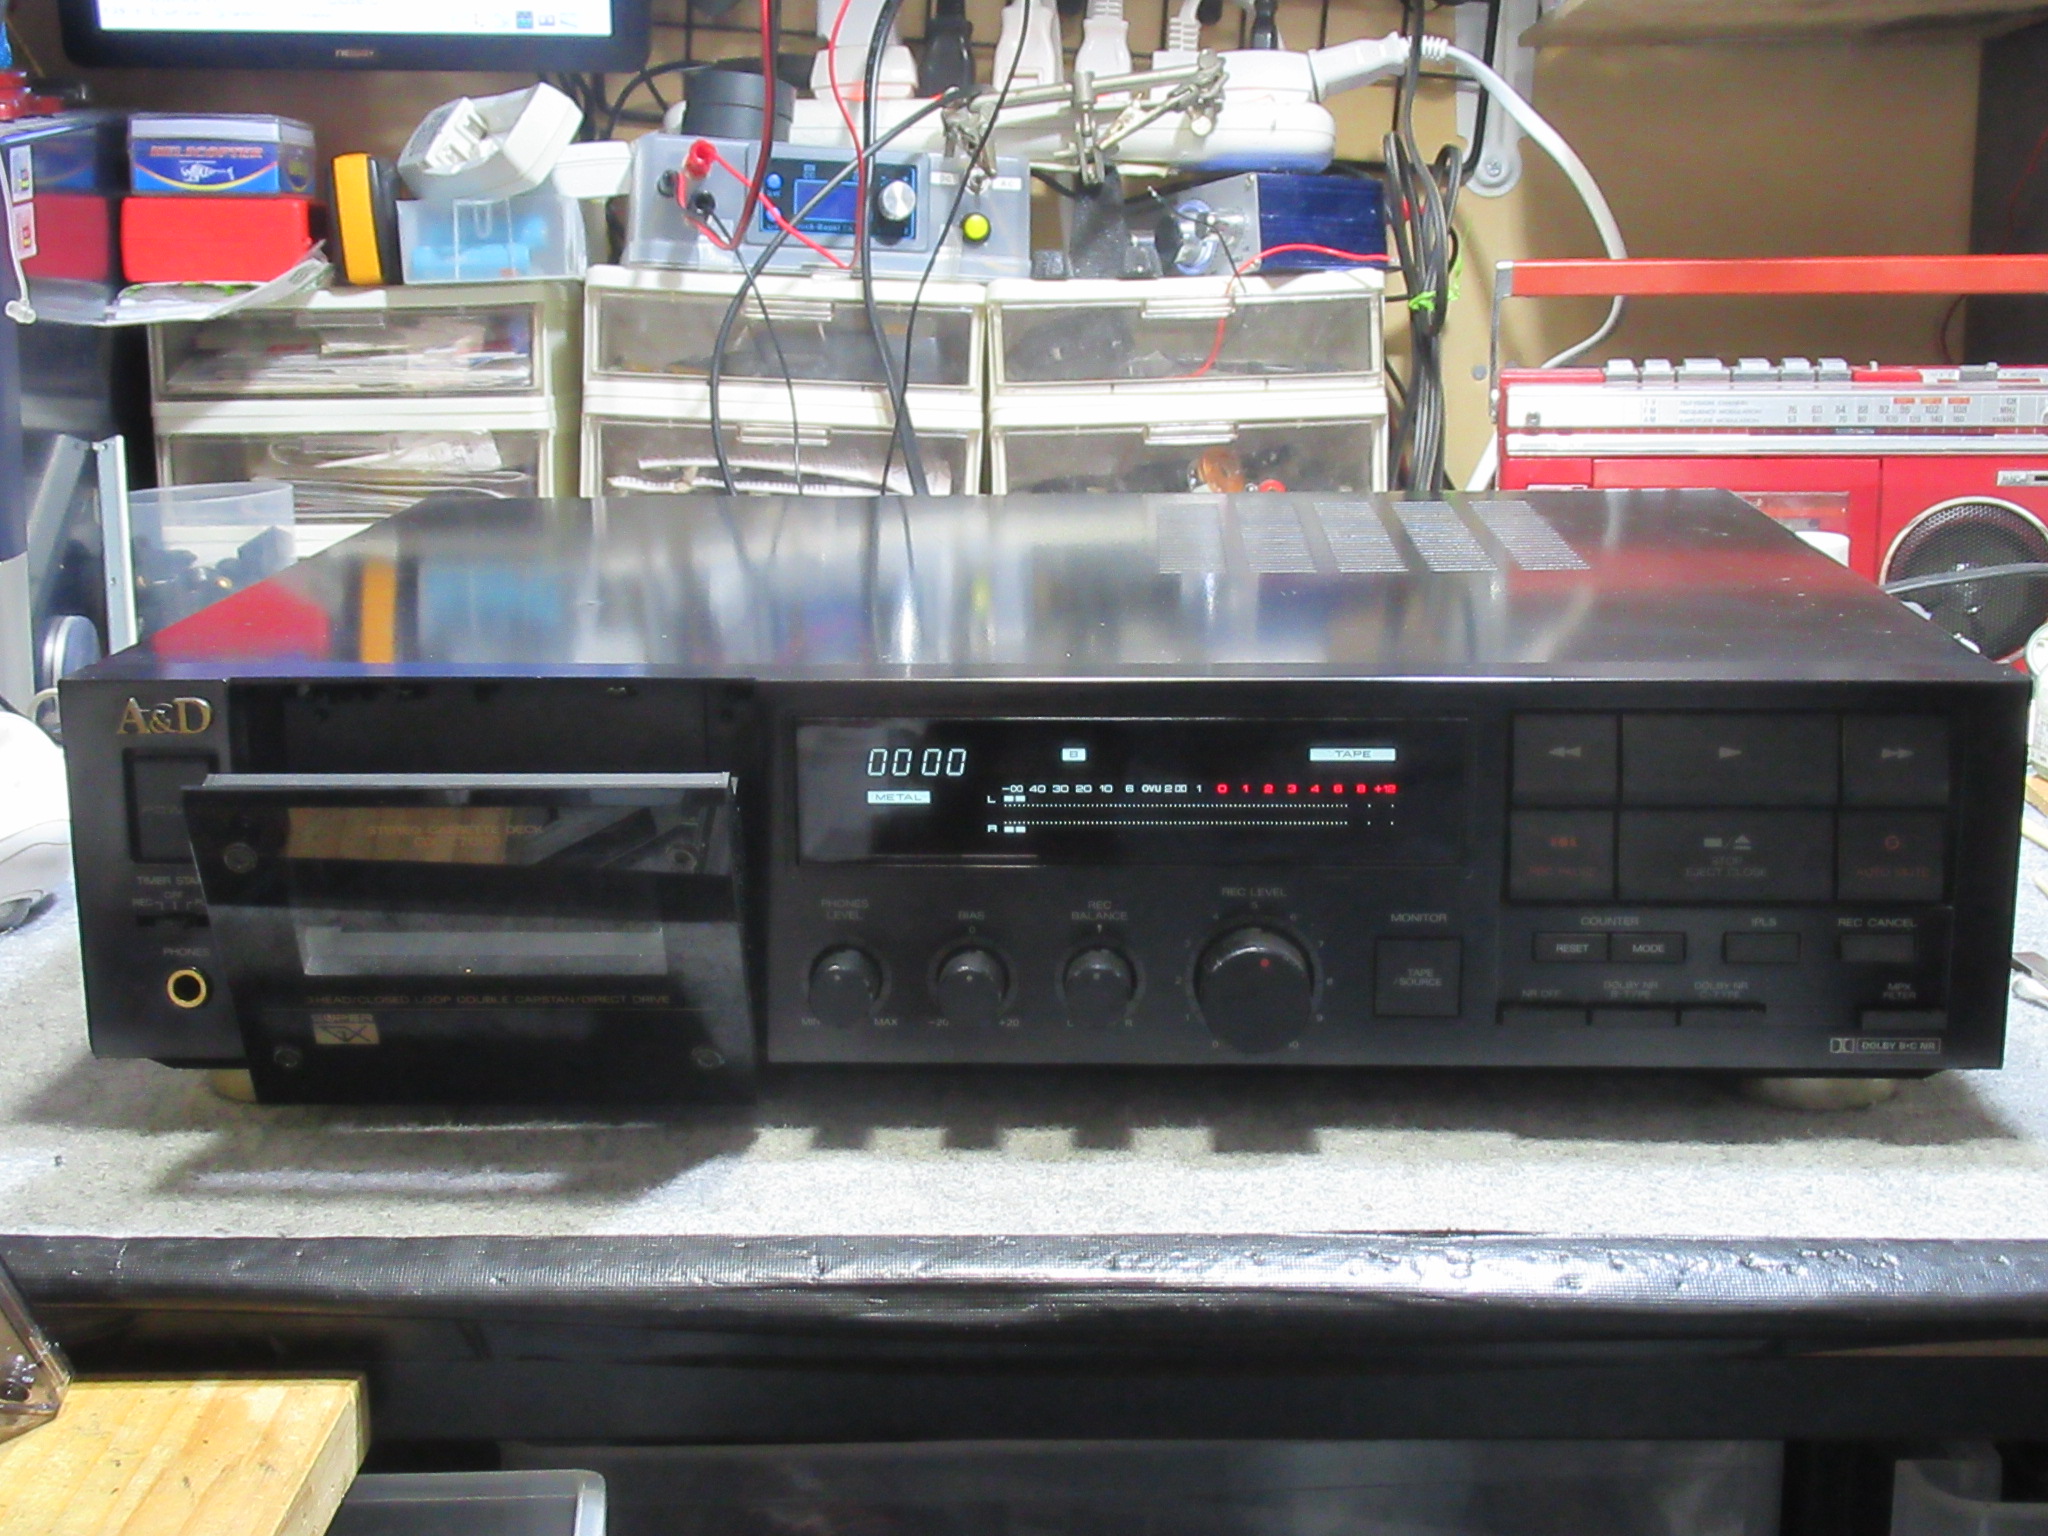 A&D GX-Z7000 リフレッシュメニュー – Audiolife － Enjoy your audio